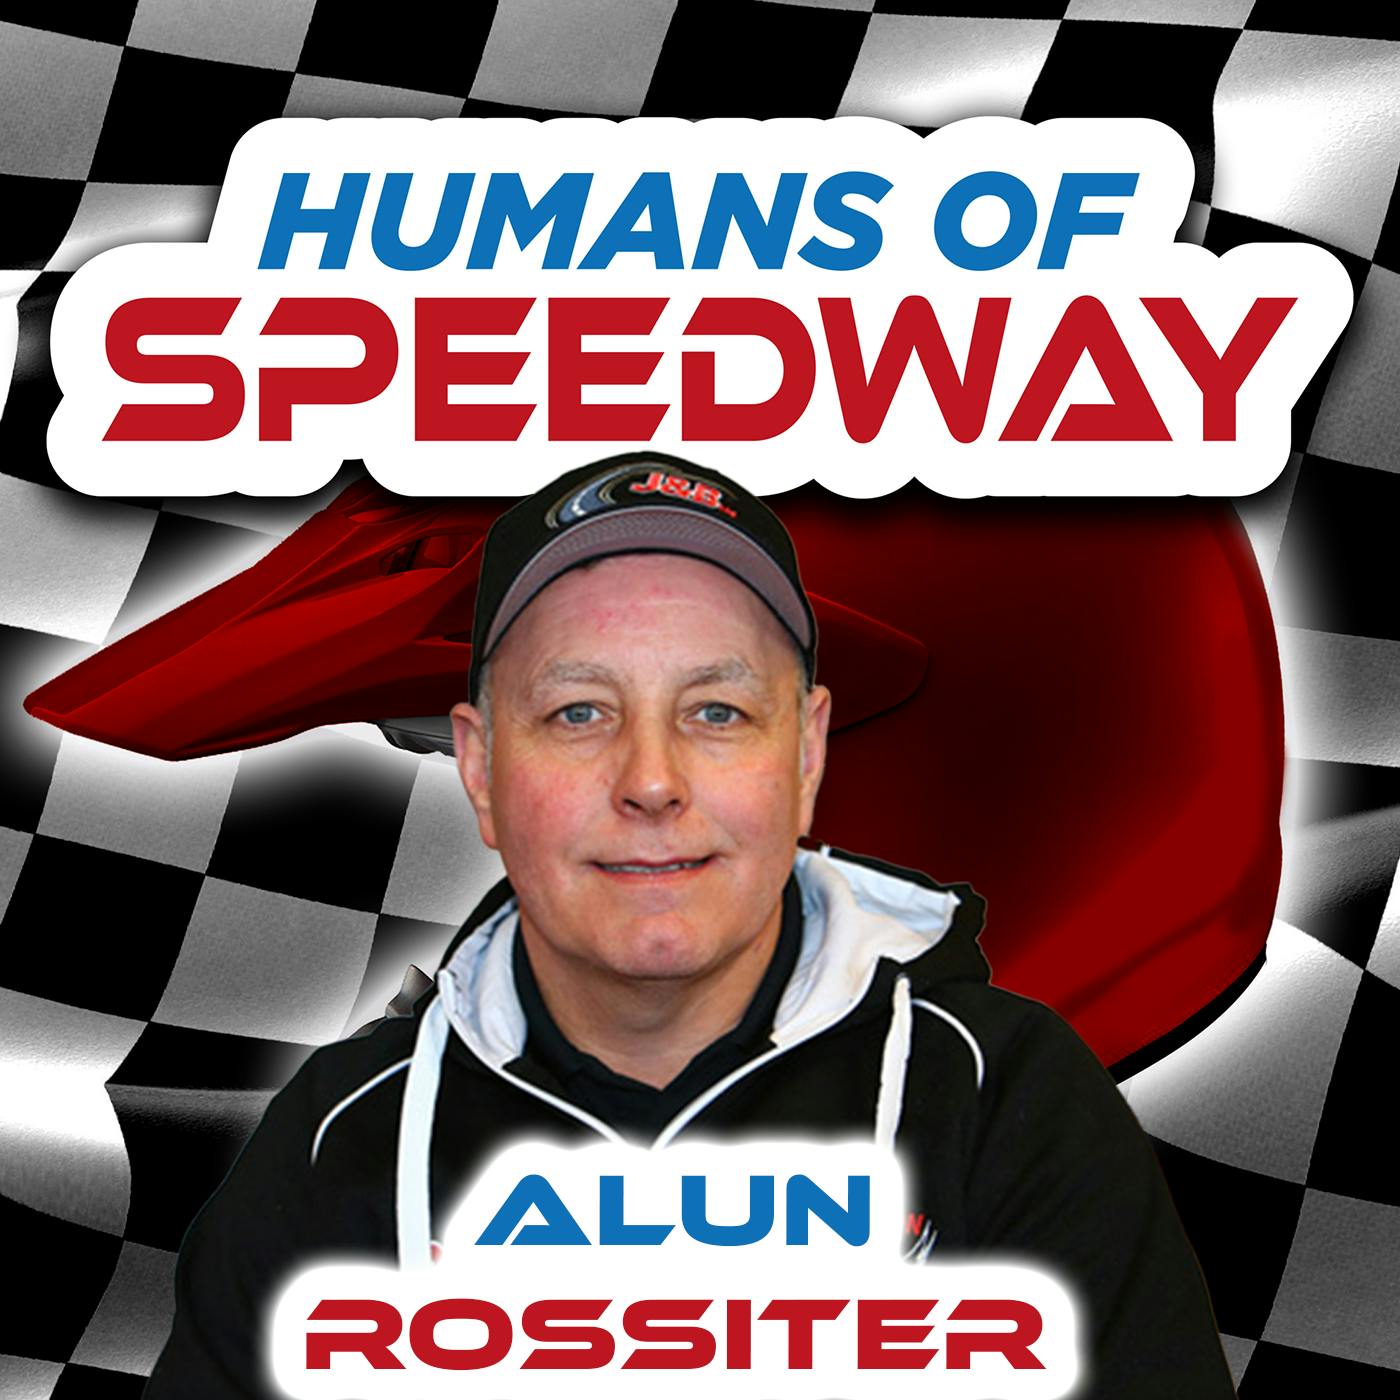 Alun Rossiter